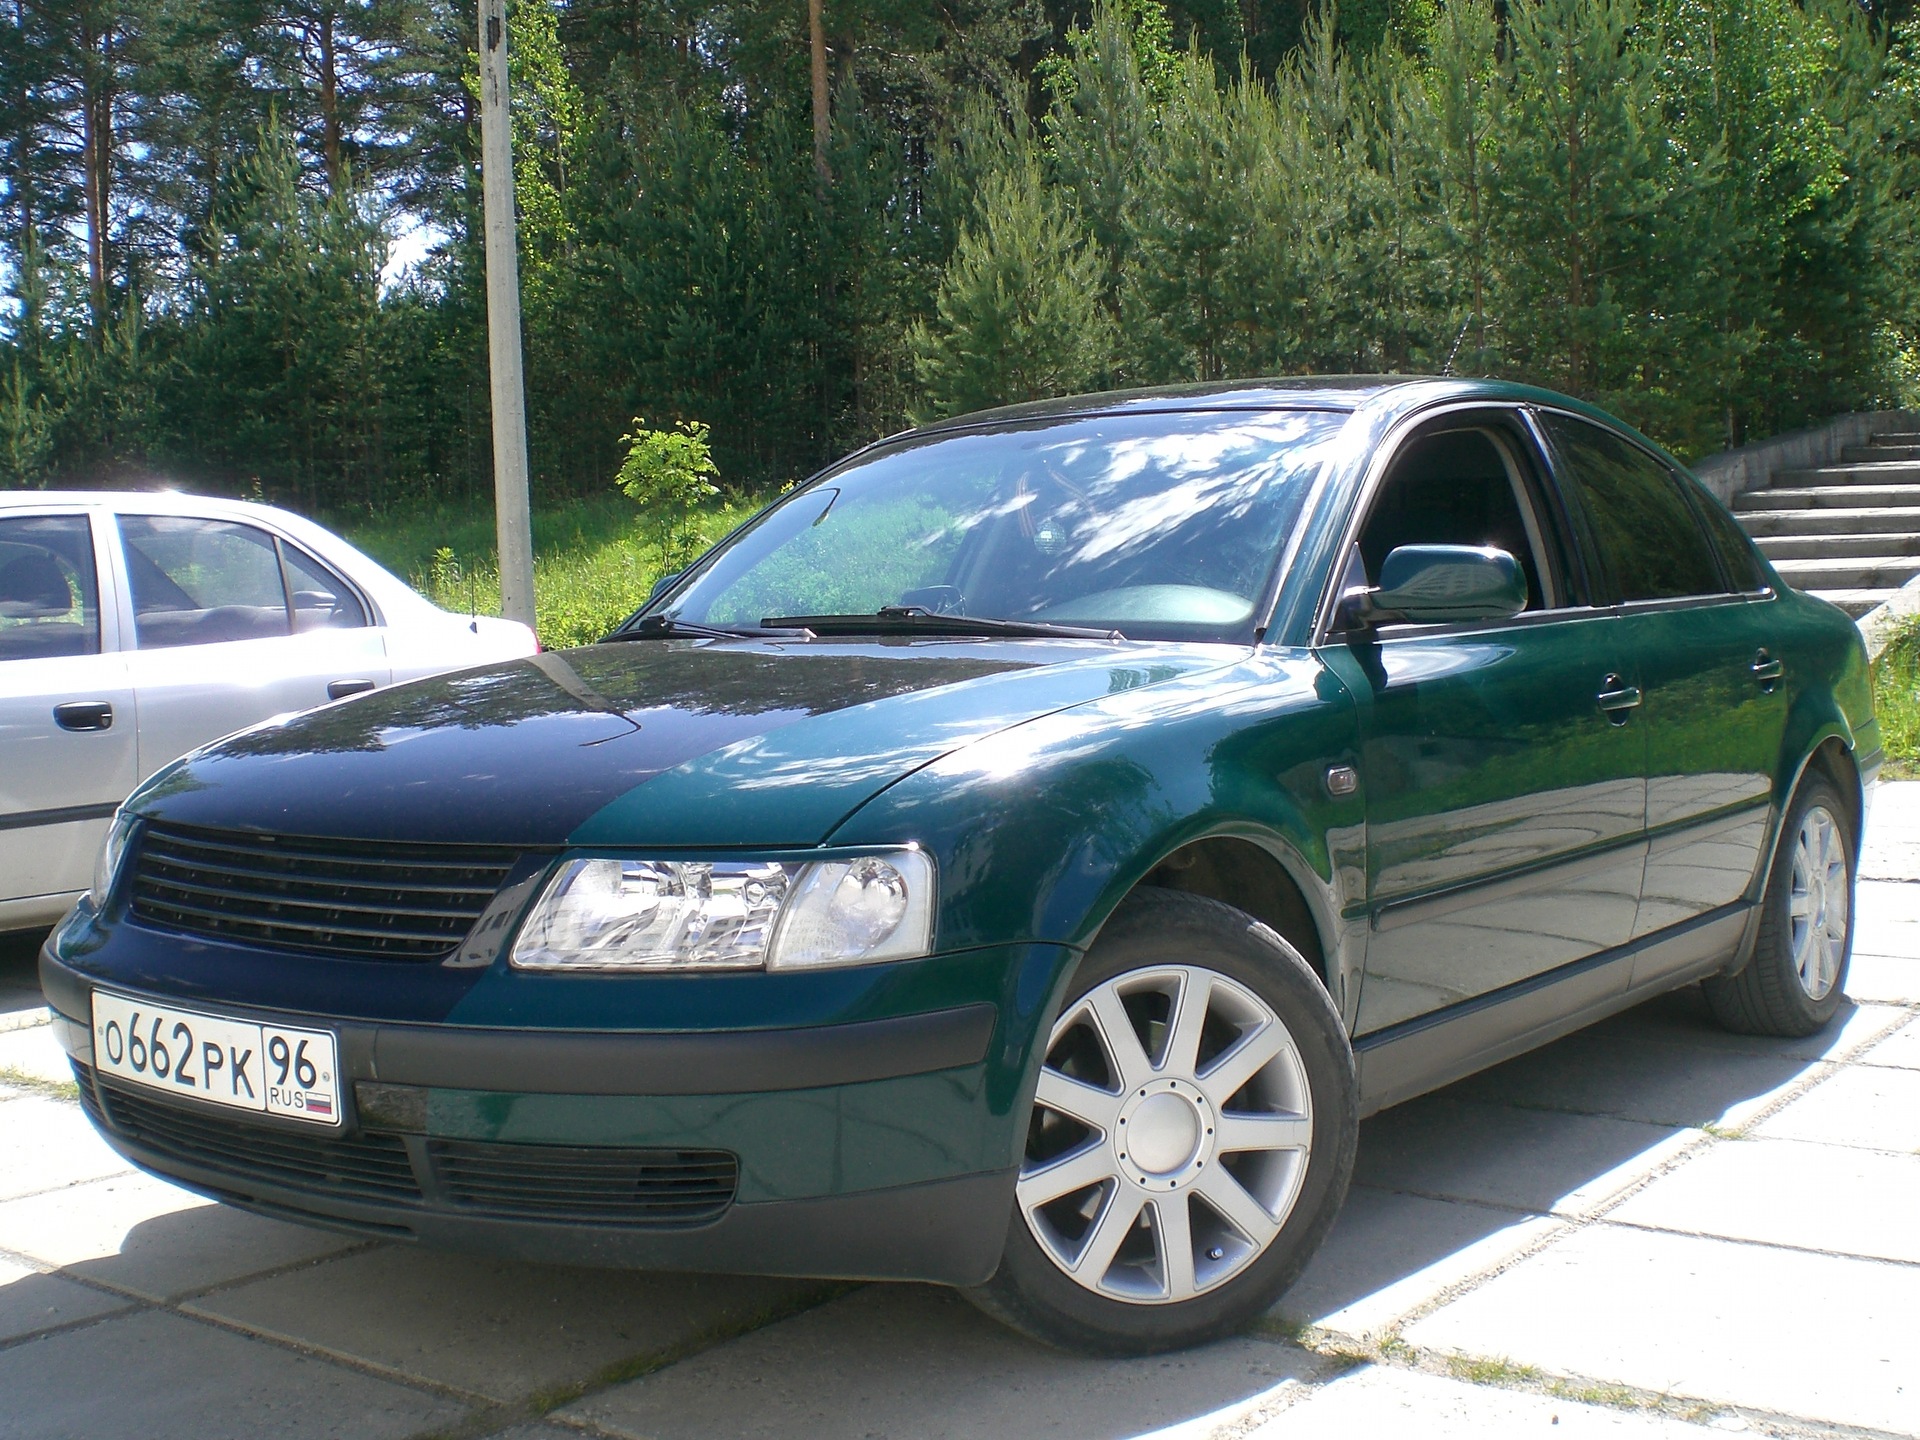 Пассат б5 1999 год. Фольксваген Пассат б5 зеленый. Пассат б5 1998. VW Passat b5 1998. VW Passat b5 зеленый.